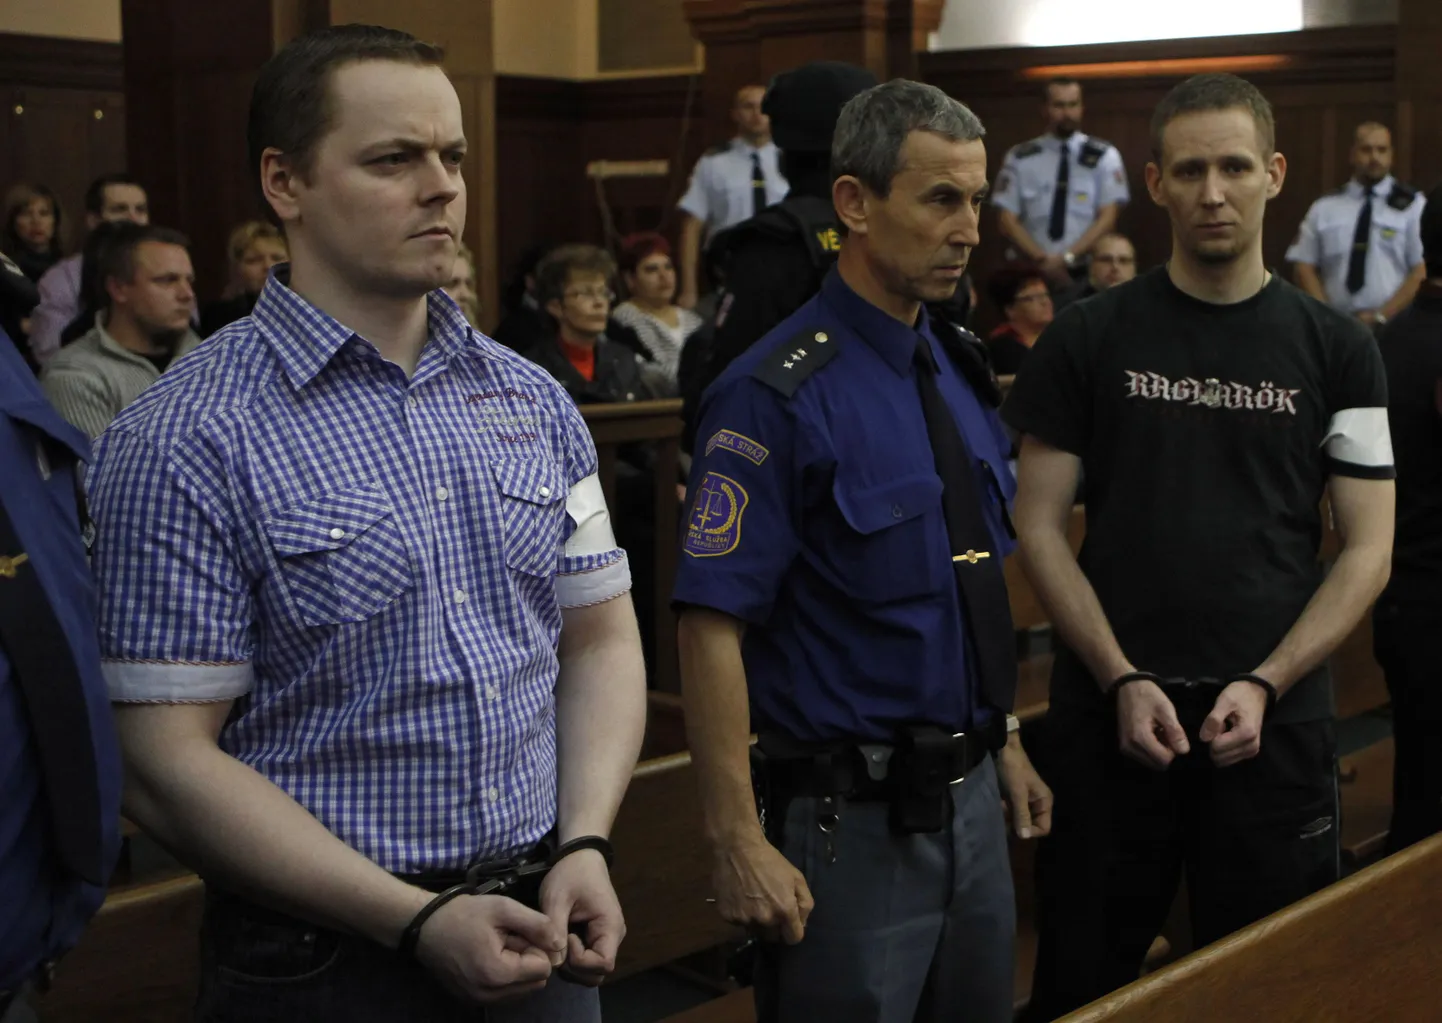 Kohtusaalis kahel pool turvameest seisavad David Vaculik (vasakul) ja Jaromir Lukes.